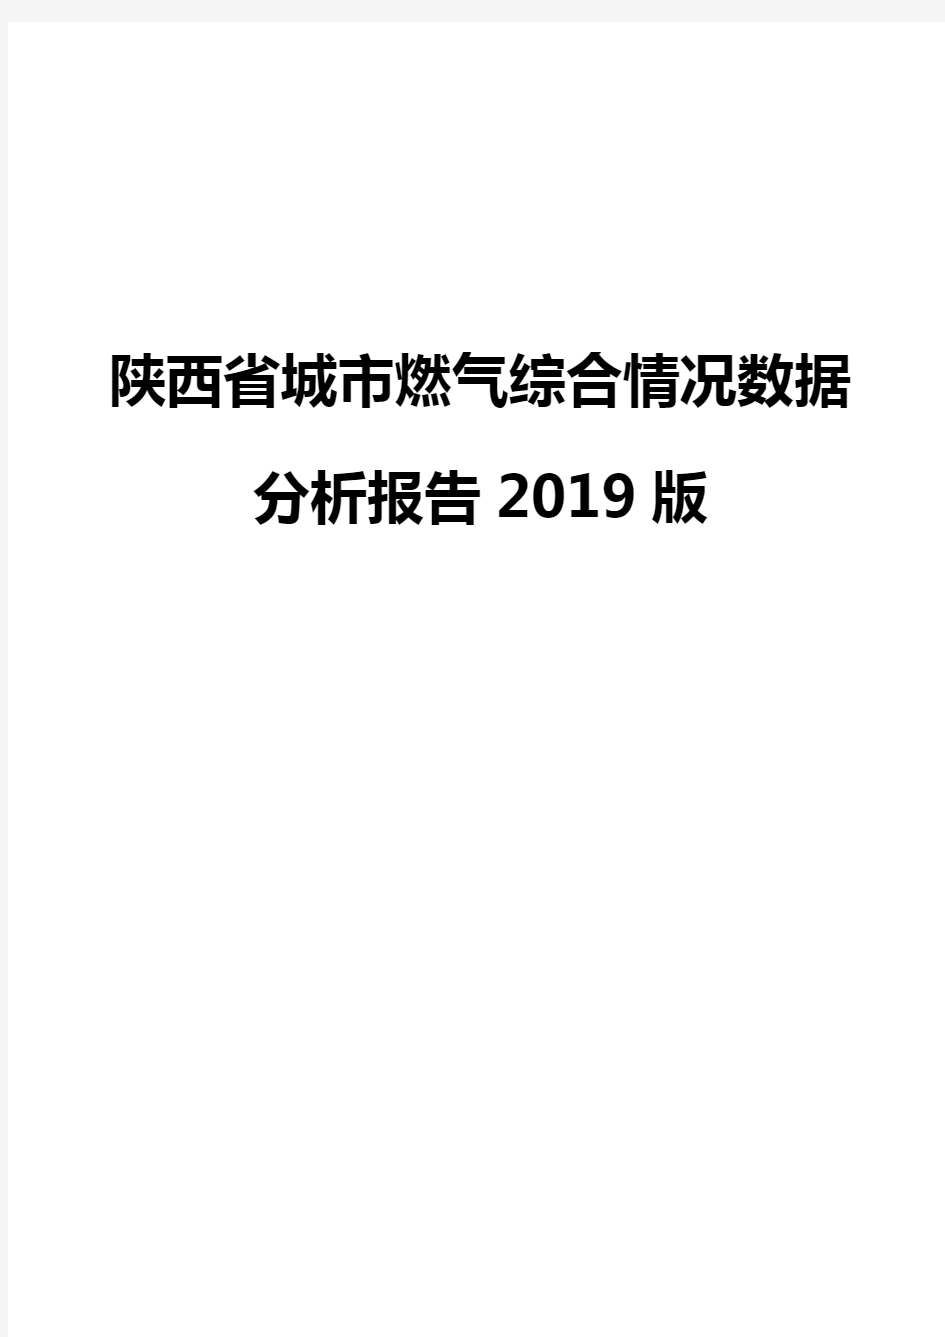 陕西省城市燃气综合情况数据分析报告2019版